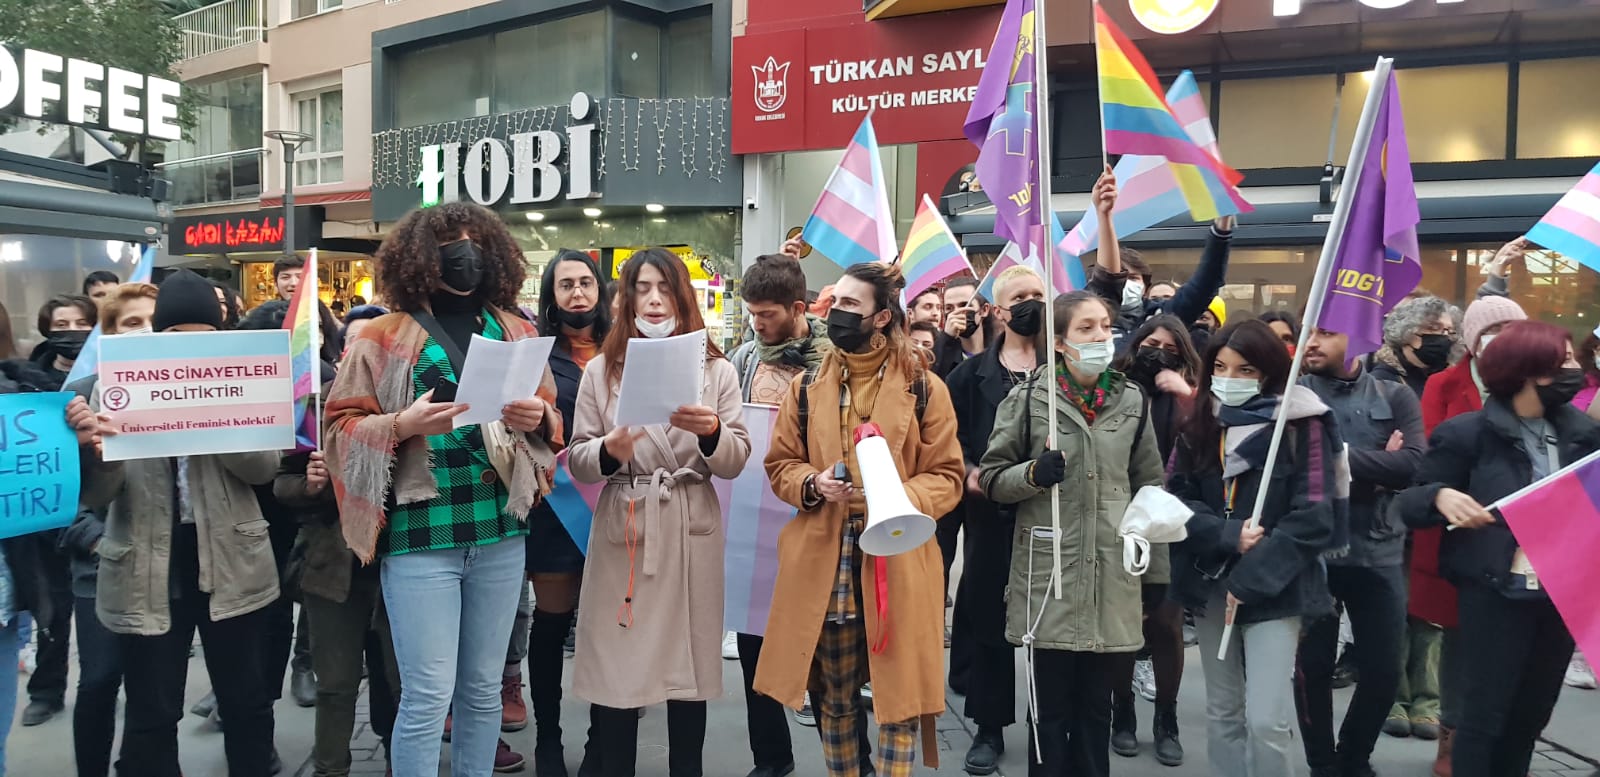 LGBTİ+ ve insan hakları örgütleri İzmir’den seslendi: Nefrete inat yaşasın hayat! Kaos GL - LGBTİ+ Haber Portalı